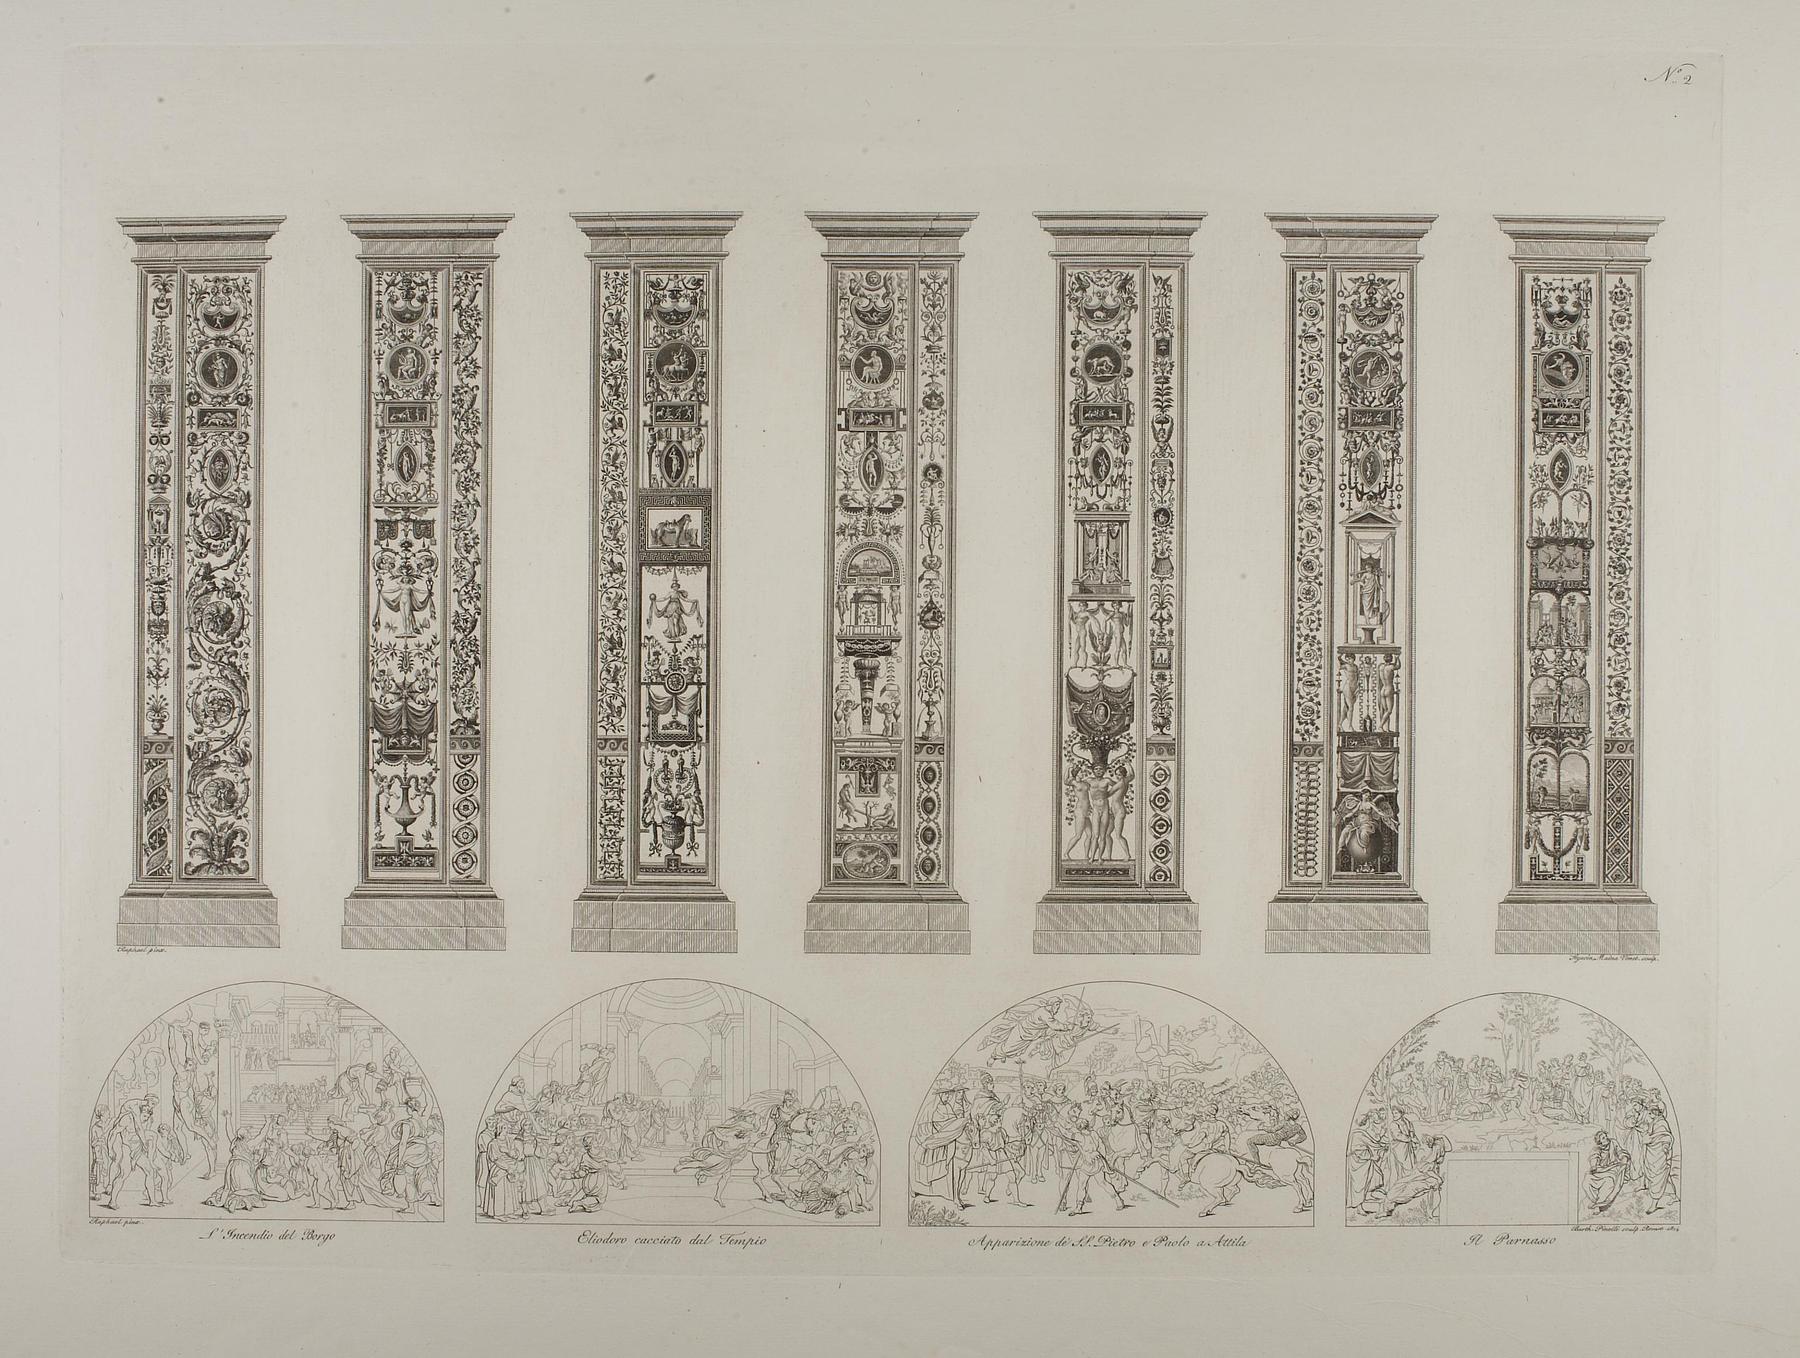 Pilastre fra Vatikanets loggiaer og Rafaels rum, E941